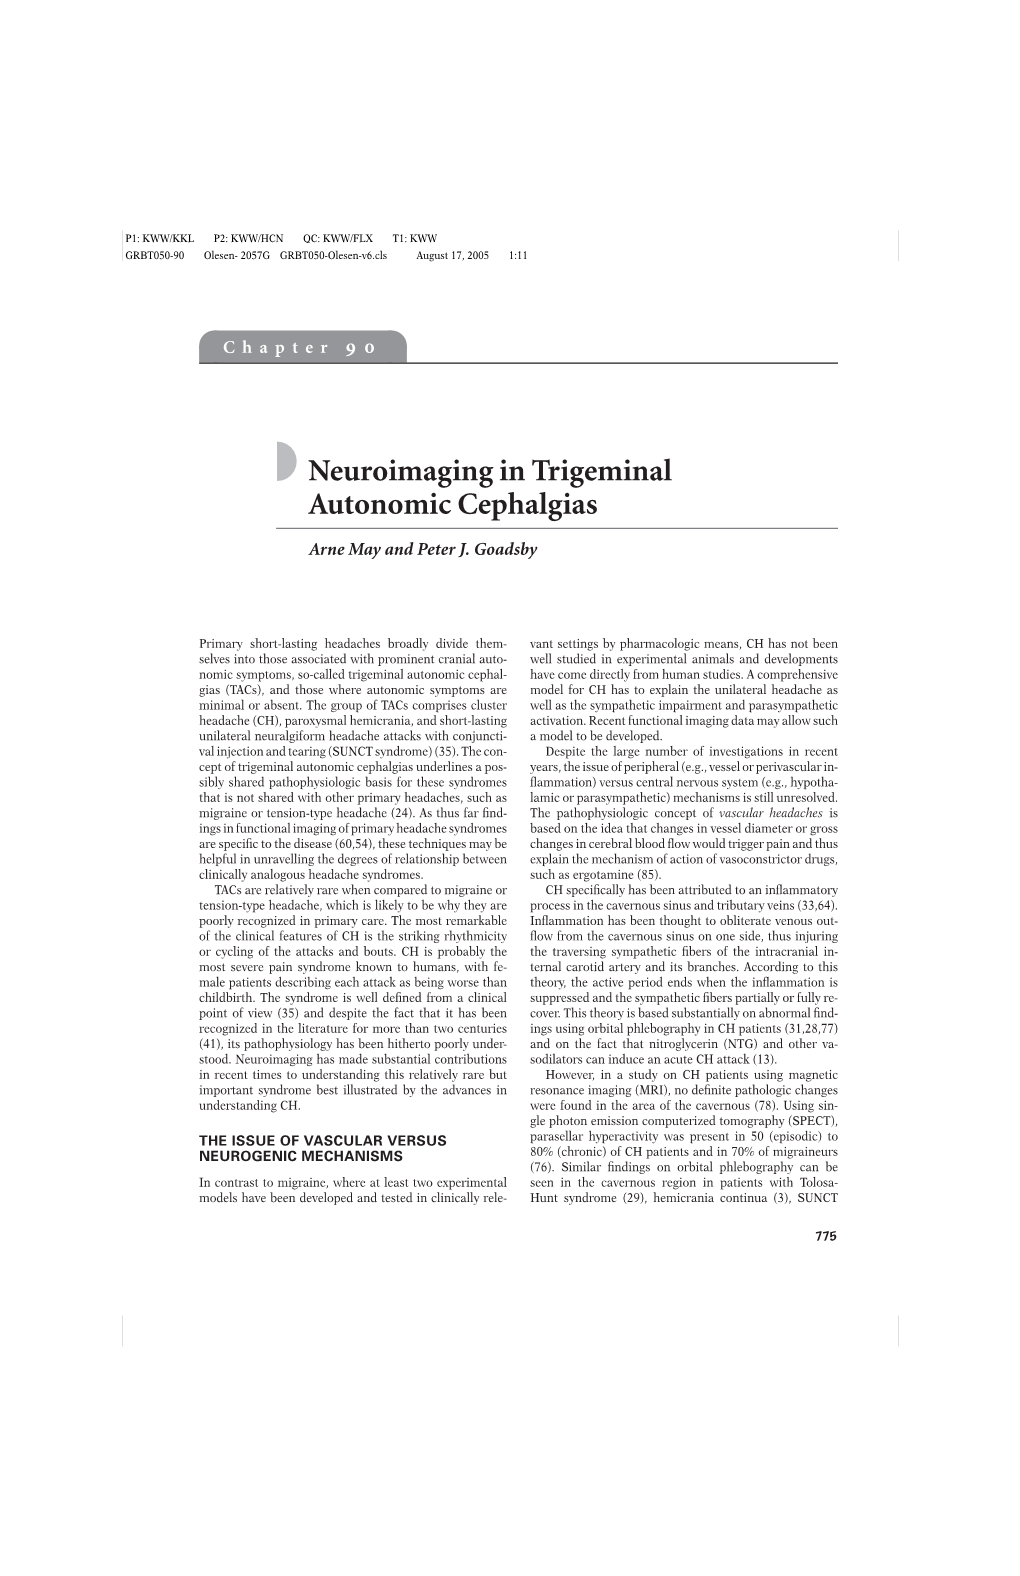 Neuroimaging in Trigeminal Autonomic Cephalgias